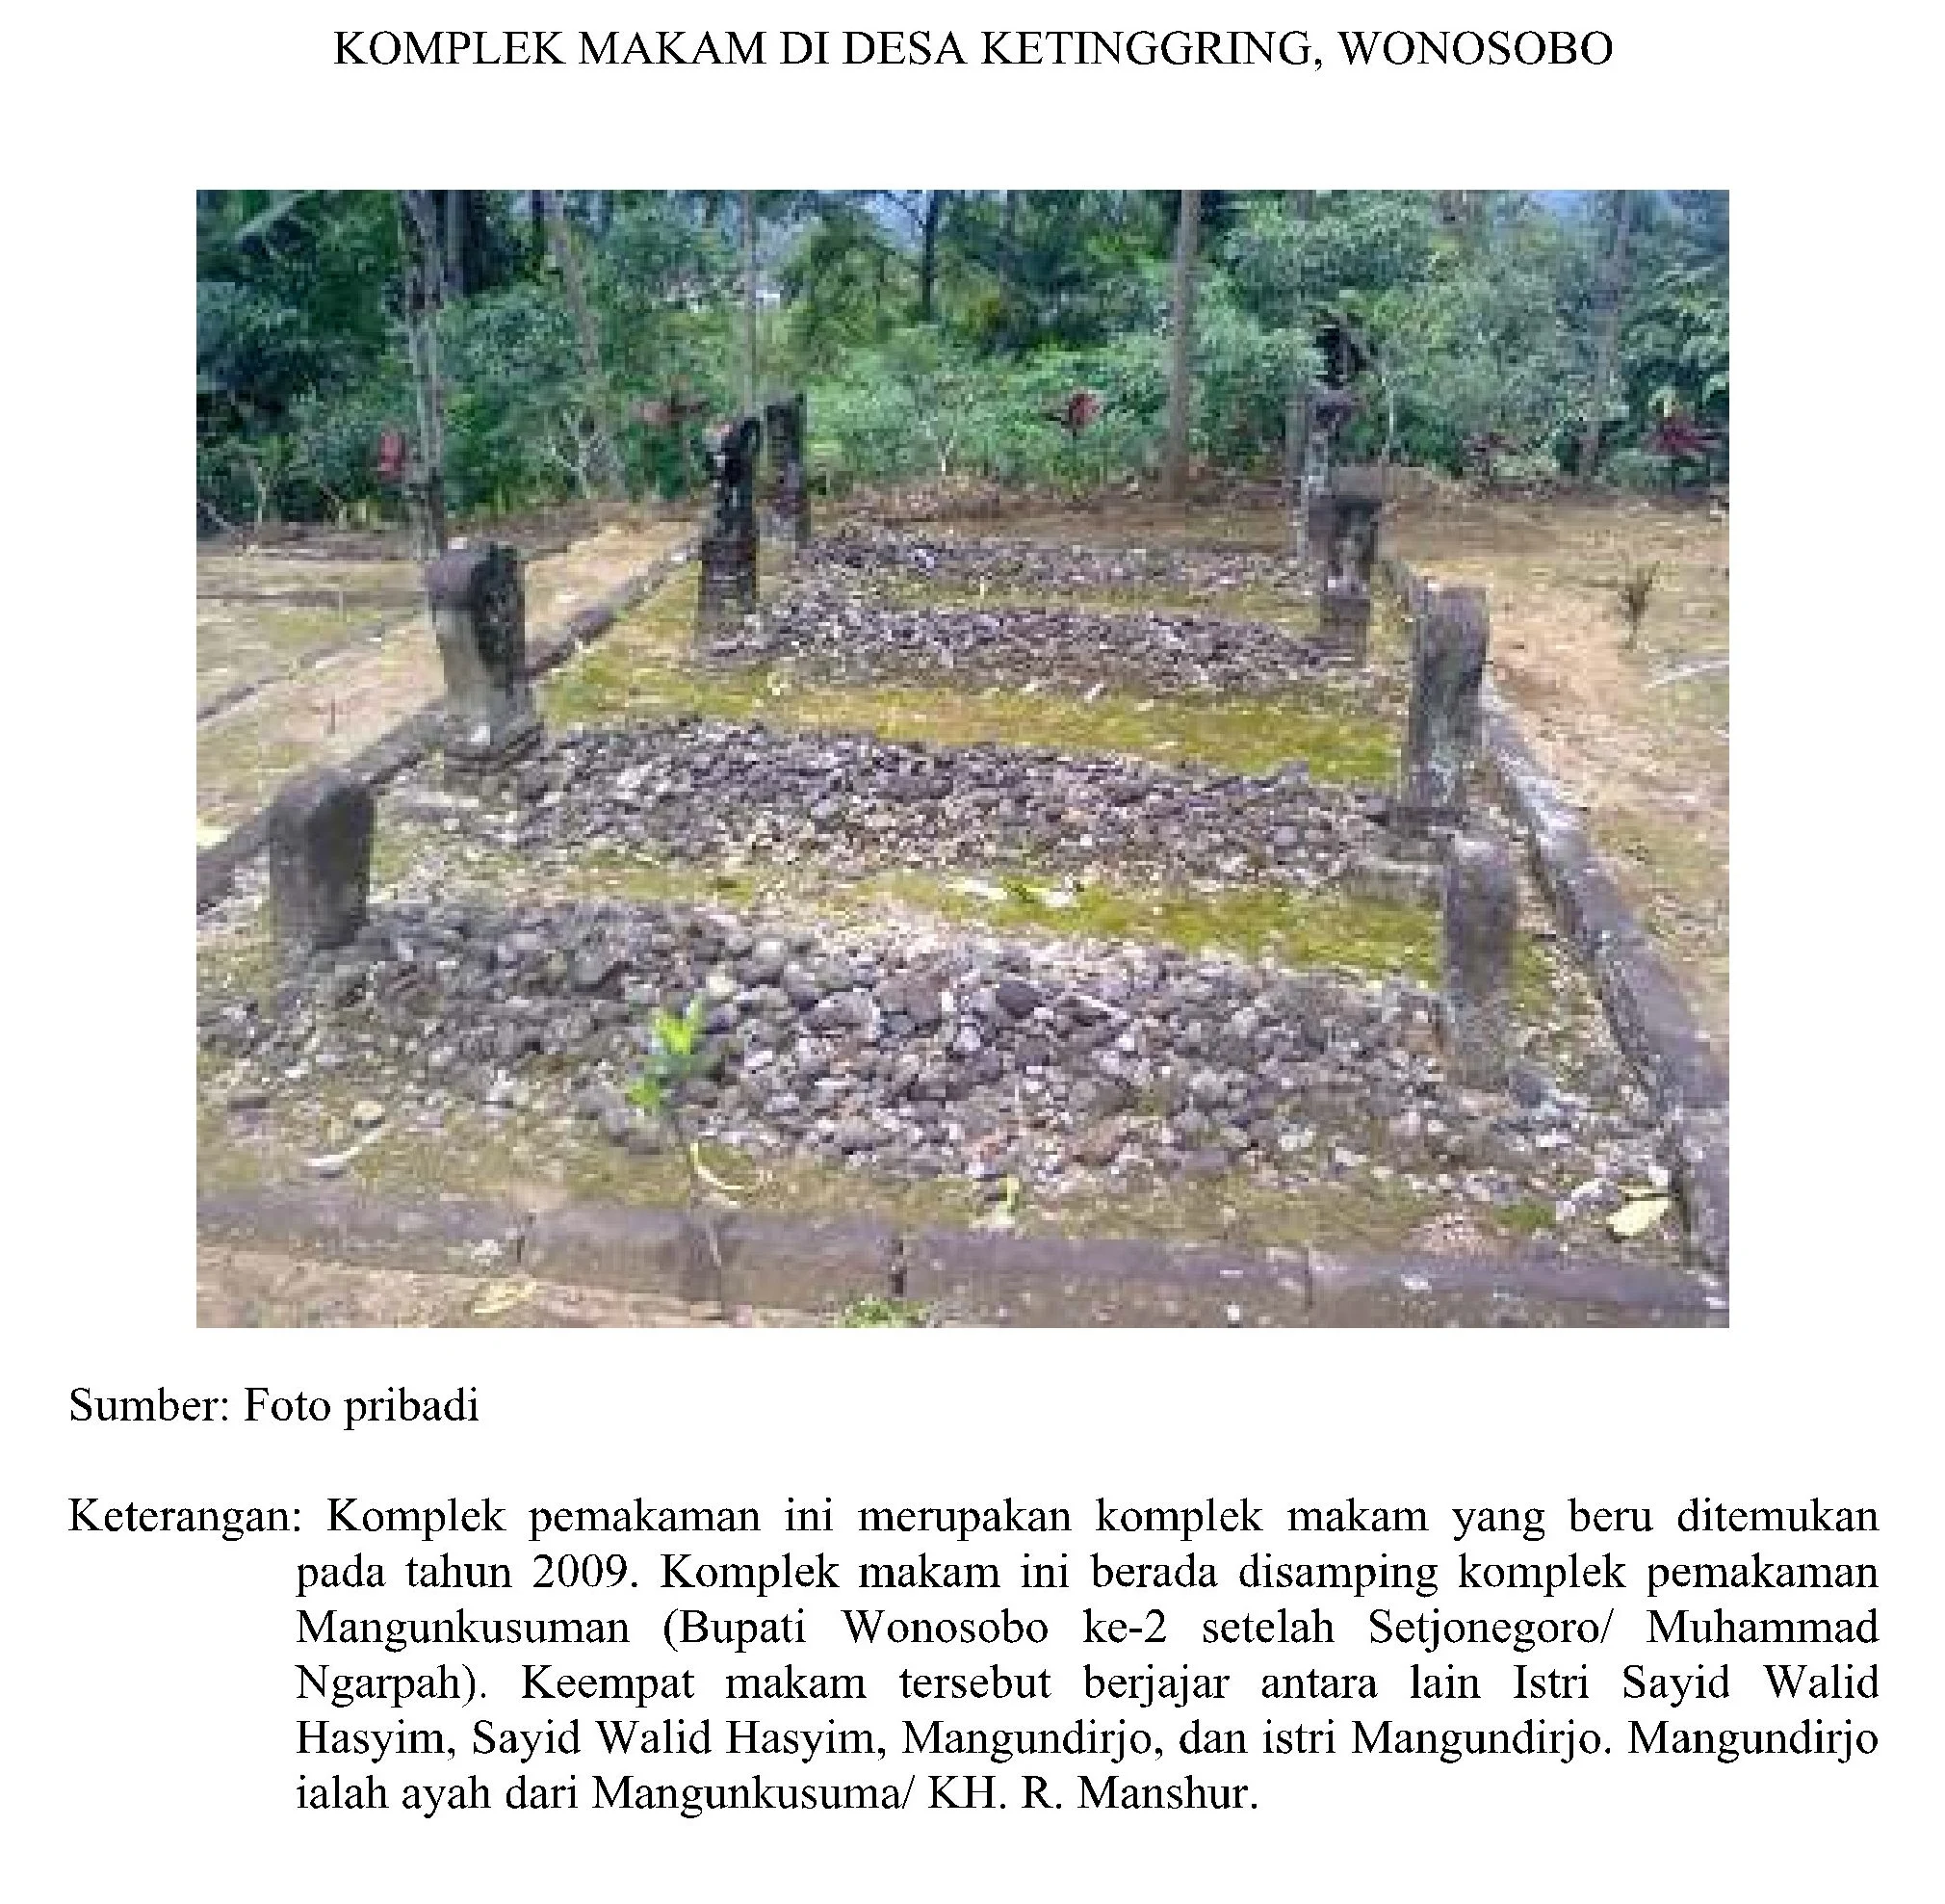 Makam Bupati Wonosobo kedua, Makam Setjonegoro / Muhammad Ngarpah, Istri Sayid Walid Hasyim, Sayyid Walid Hasyim, Mangundirjo, Ayah Mangun Kusuma / KH. R. Mansyur